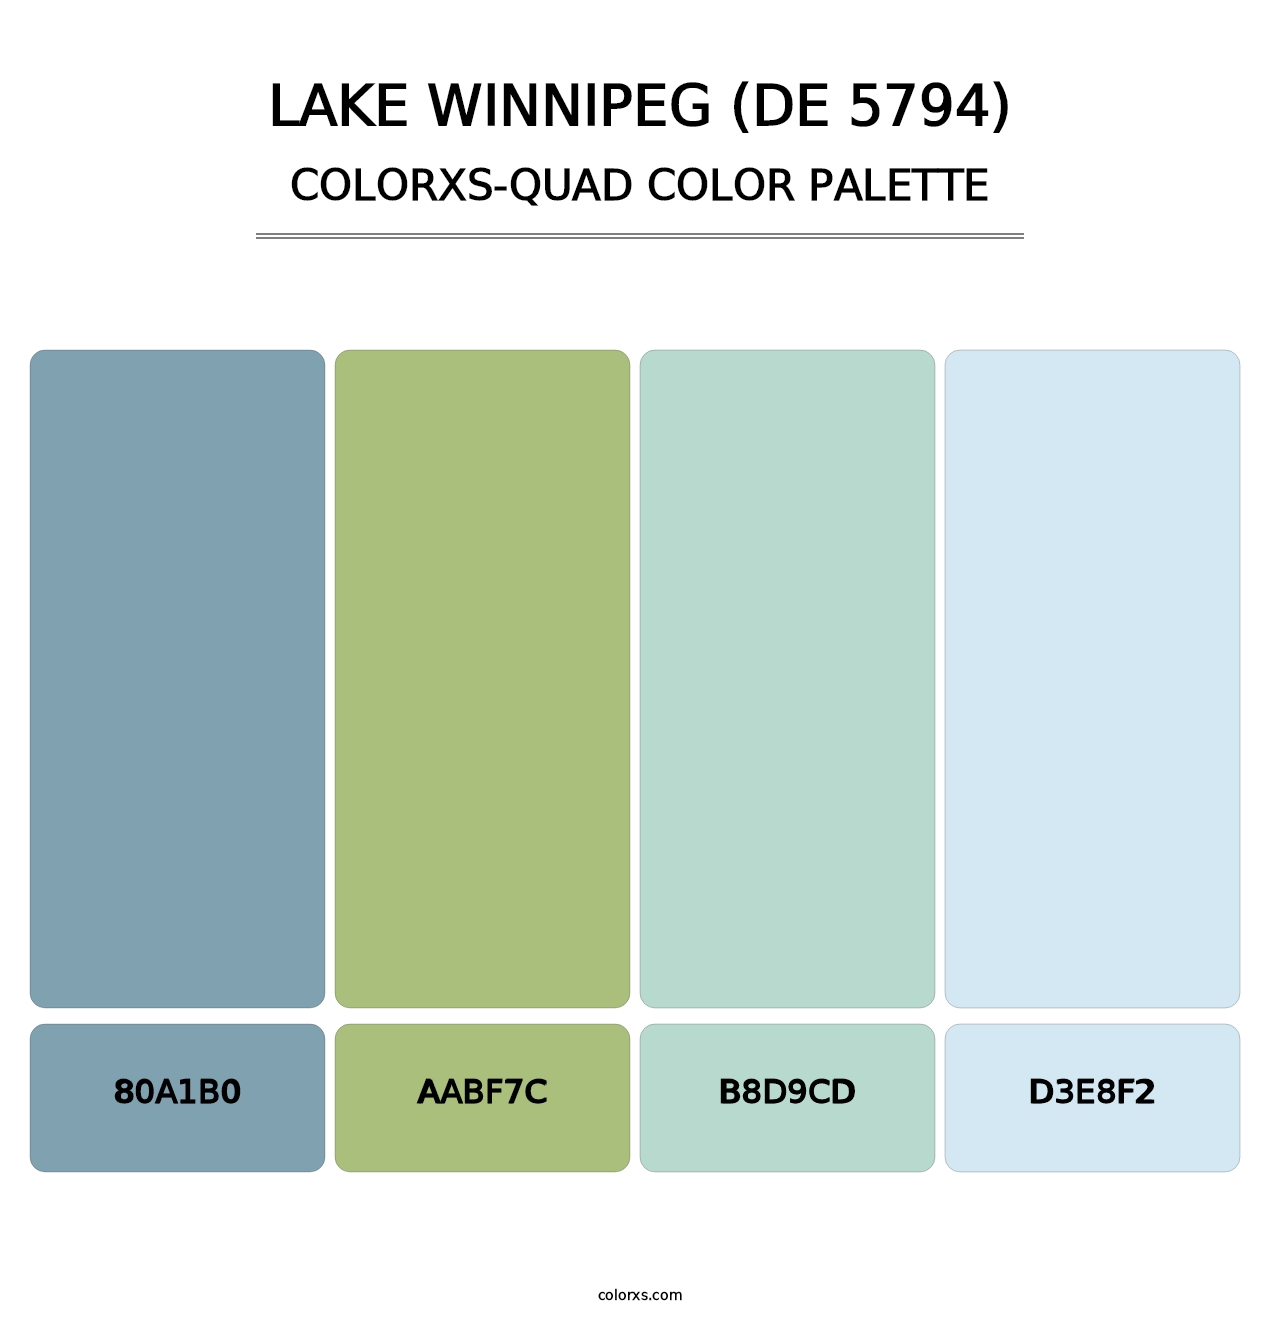 Lake Winnipeg (DE 5794) - Colorxs Quad Palette